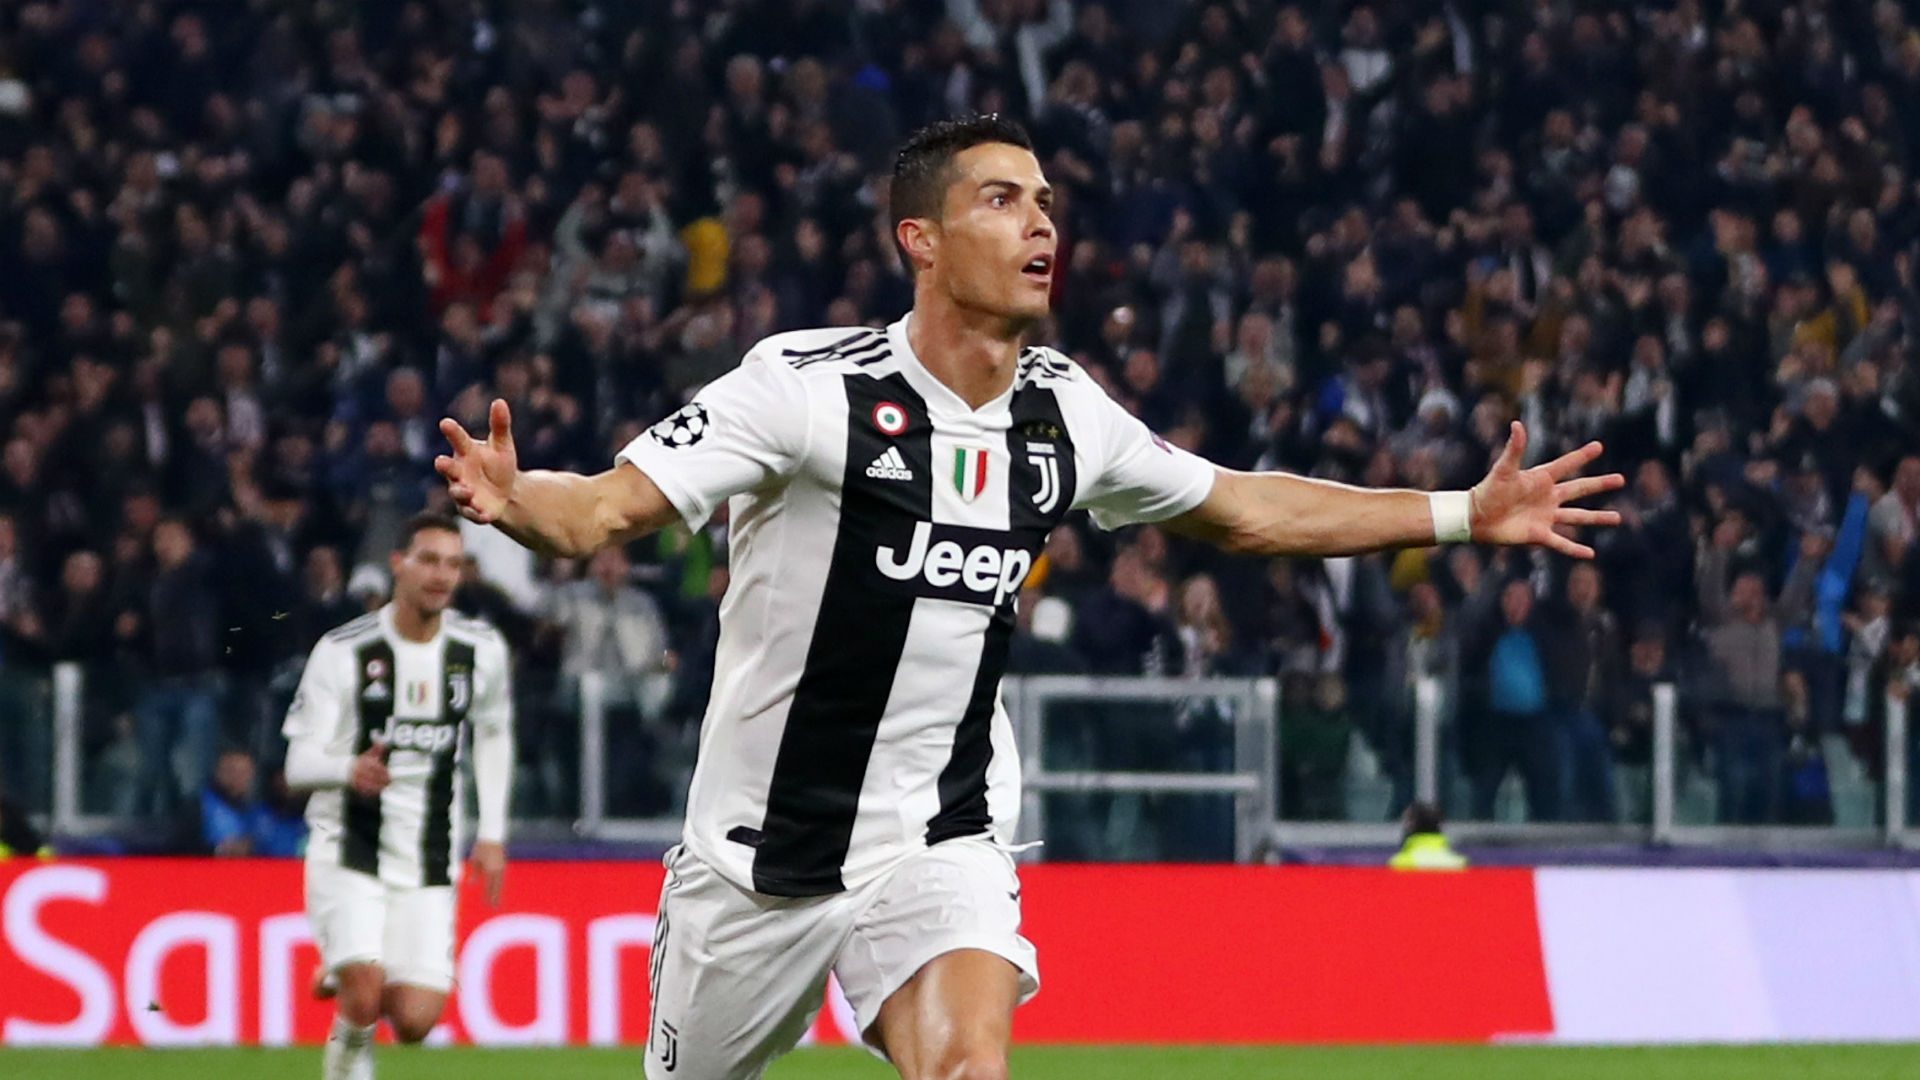 Thêm 4 bàn nữa, Ronaldo sẽ nới rộng siêu kỷ lục của mình - Bóng Đá